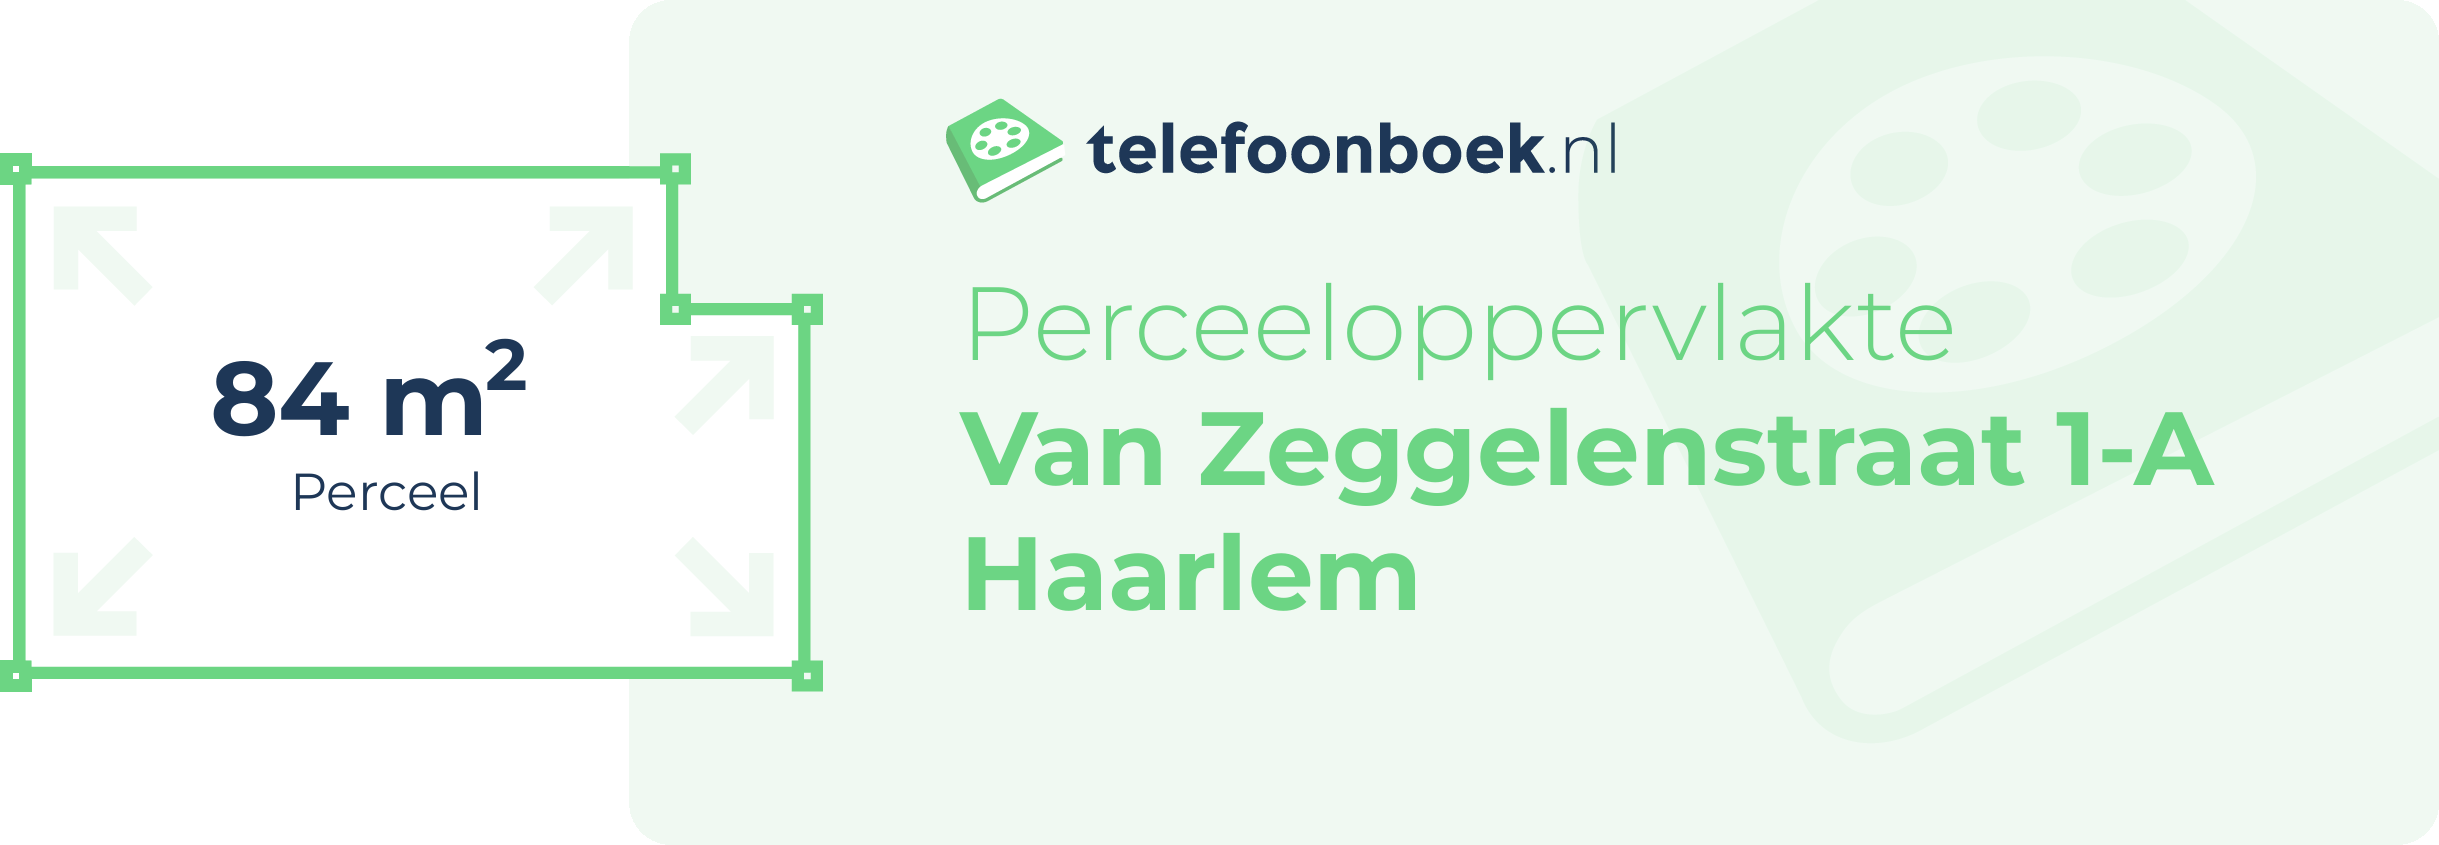 Perceeloppervlakte Van Zeggelenstraat 1-A Haarlem